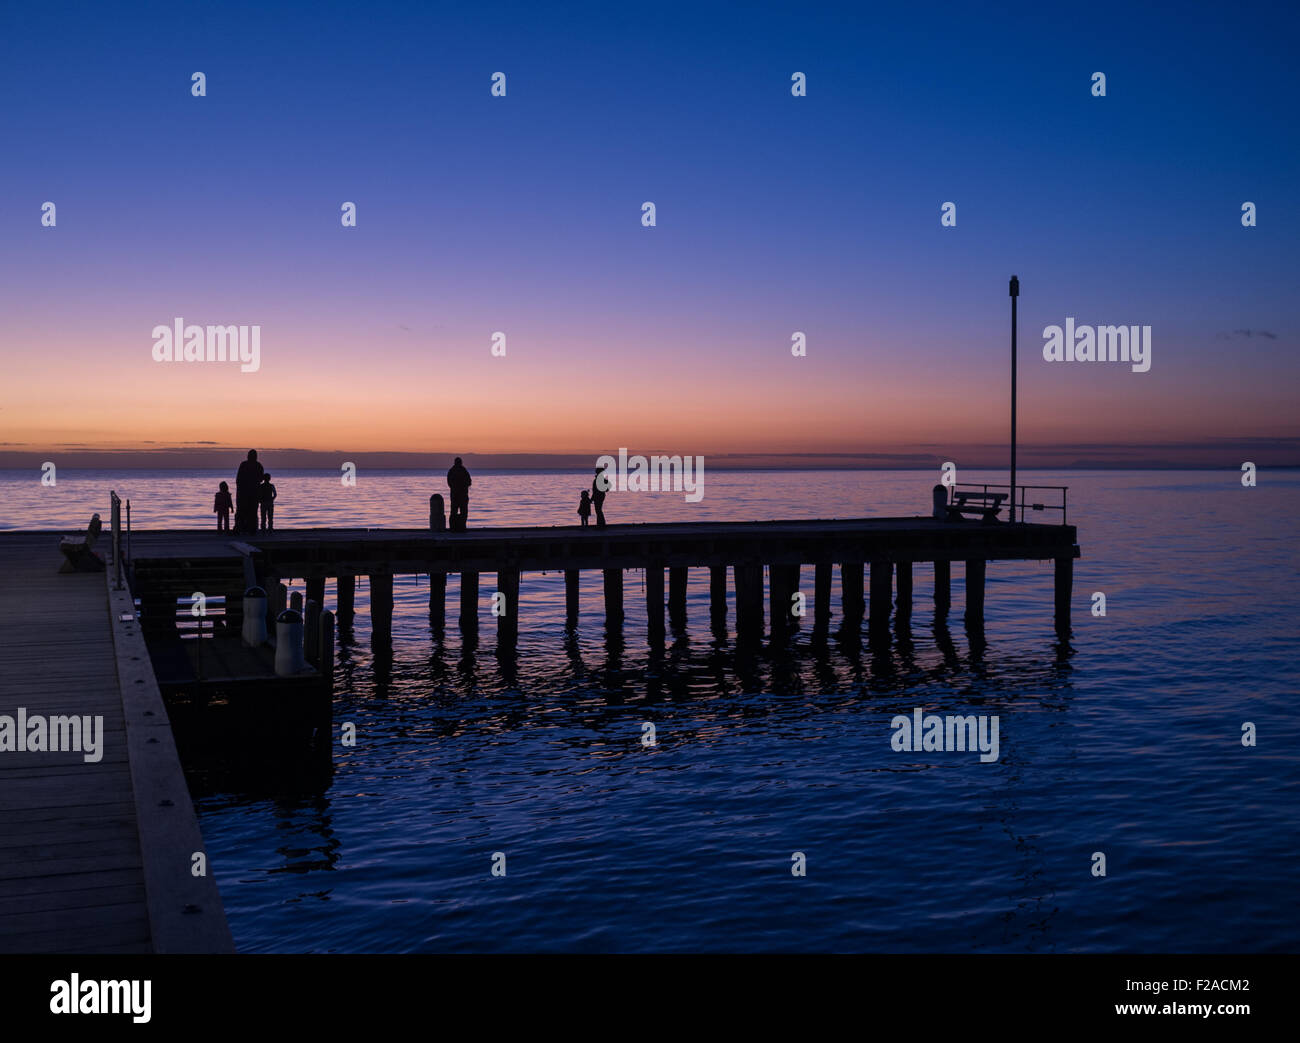 Silhouetten von Menschen stehen auf einem Pier bei Sonnenuntergang, Victoria, Australien Stockfoto